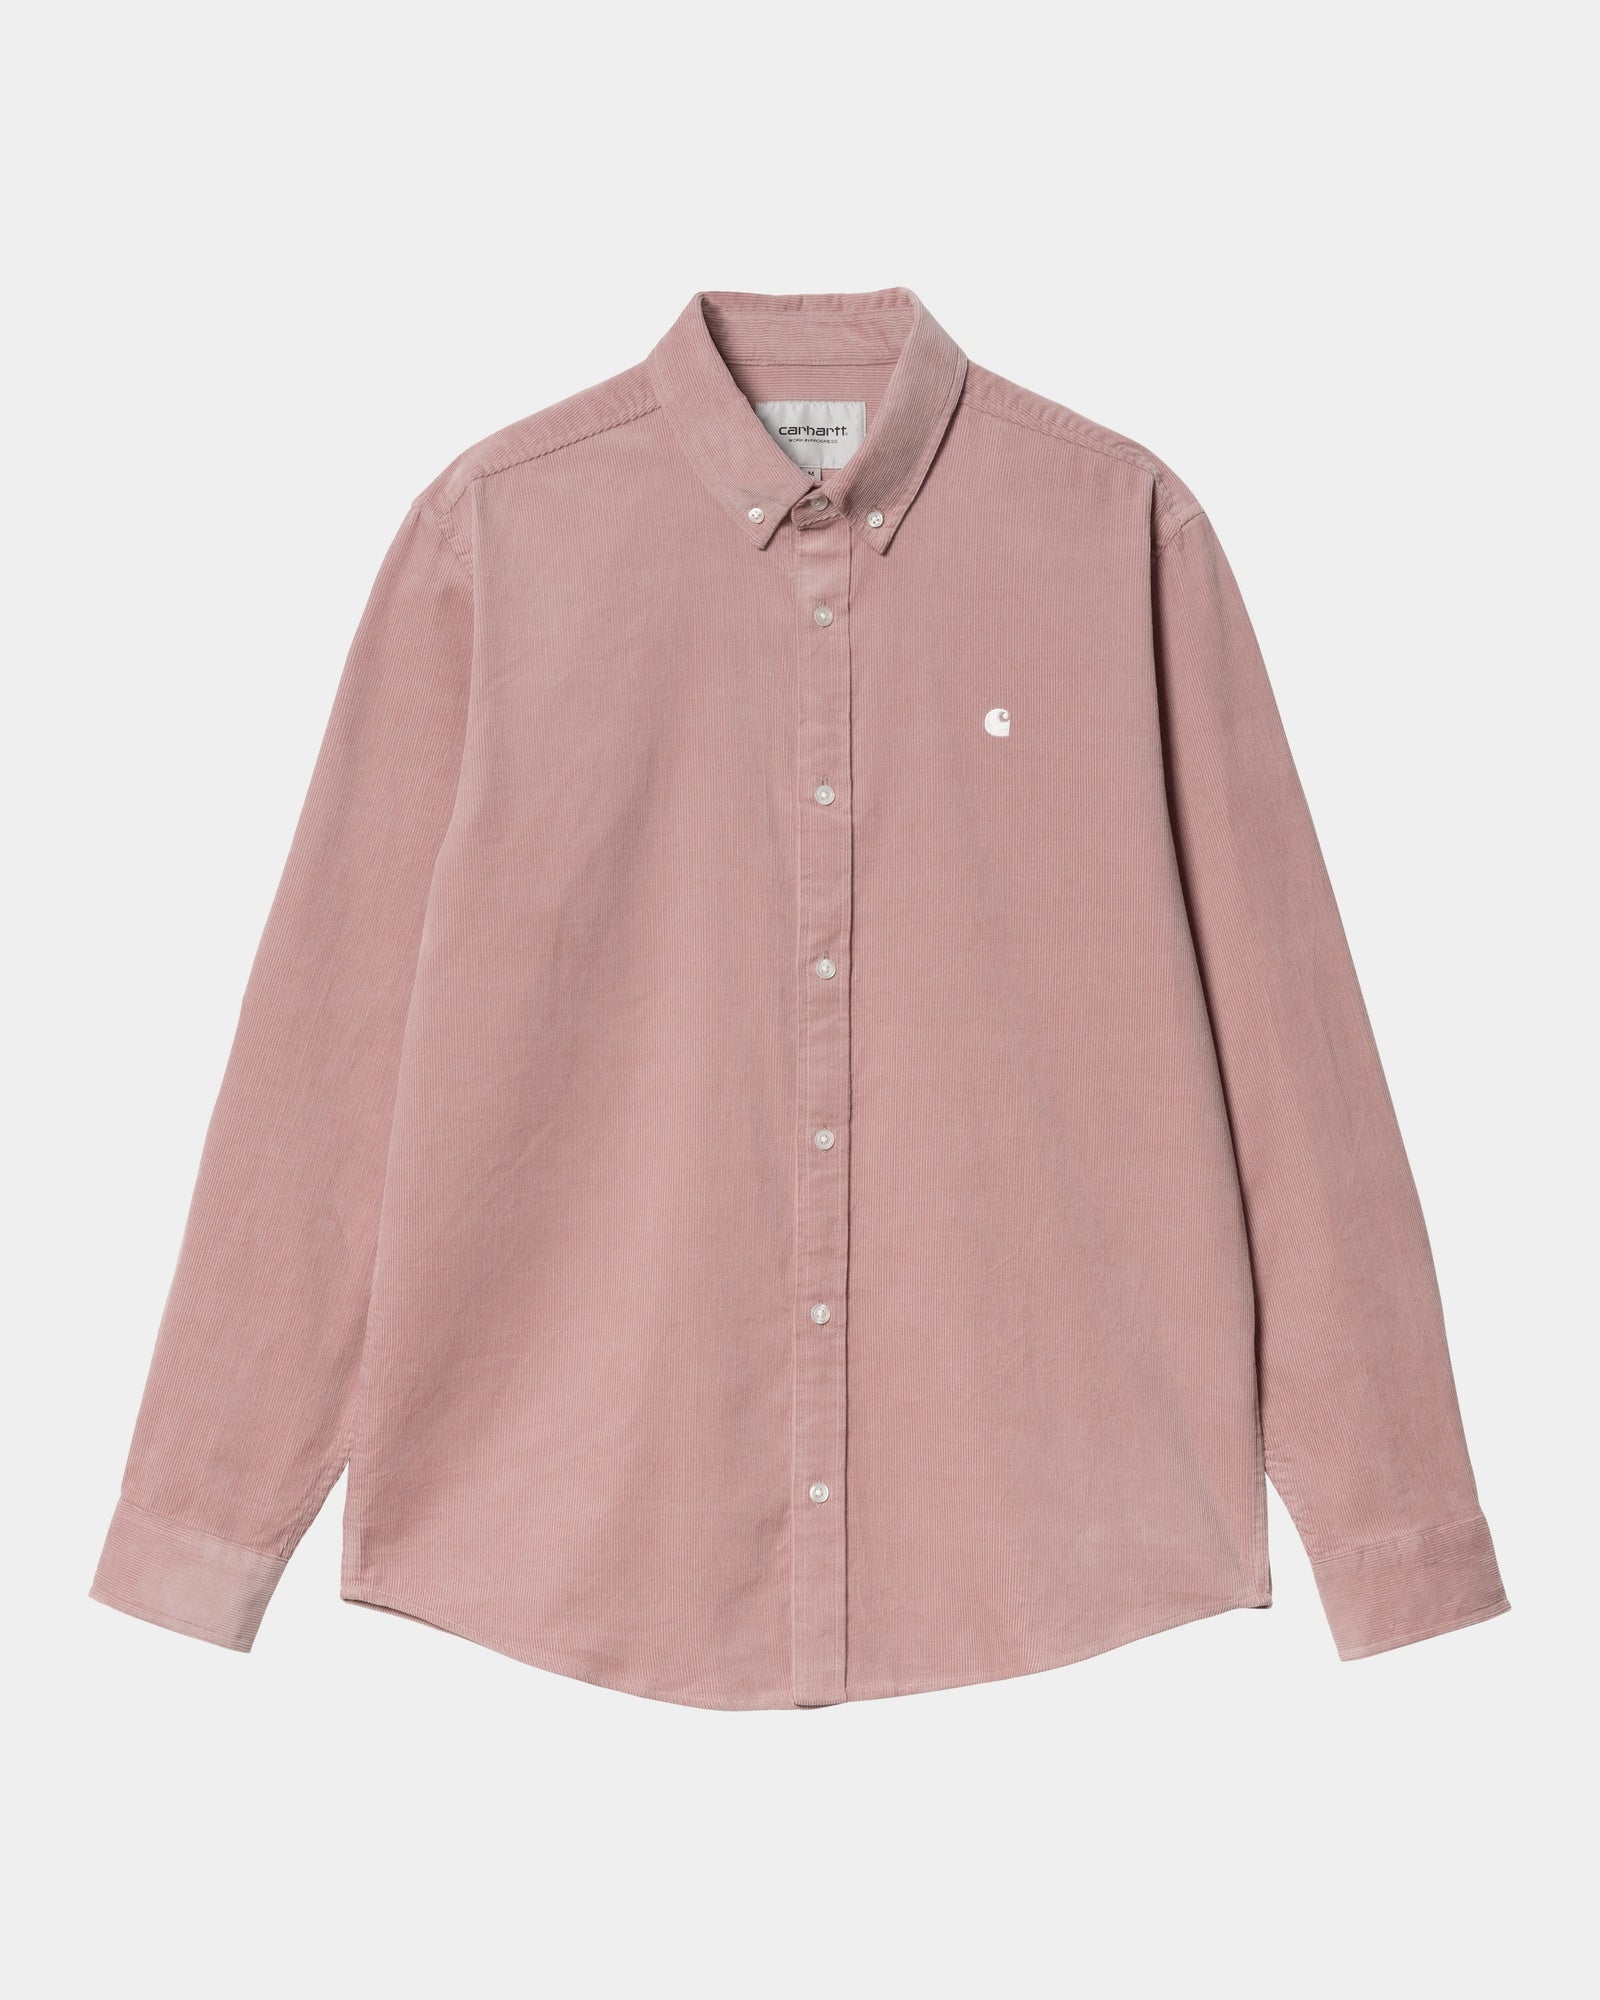 칼하트WIP Carhartt Madison Fine Cord Shirt,Glassy Pink / Wax